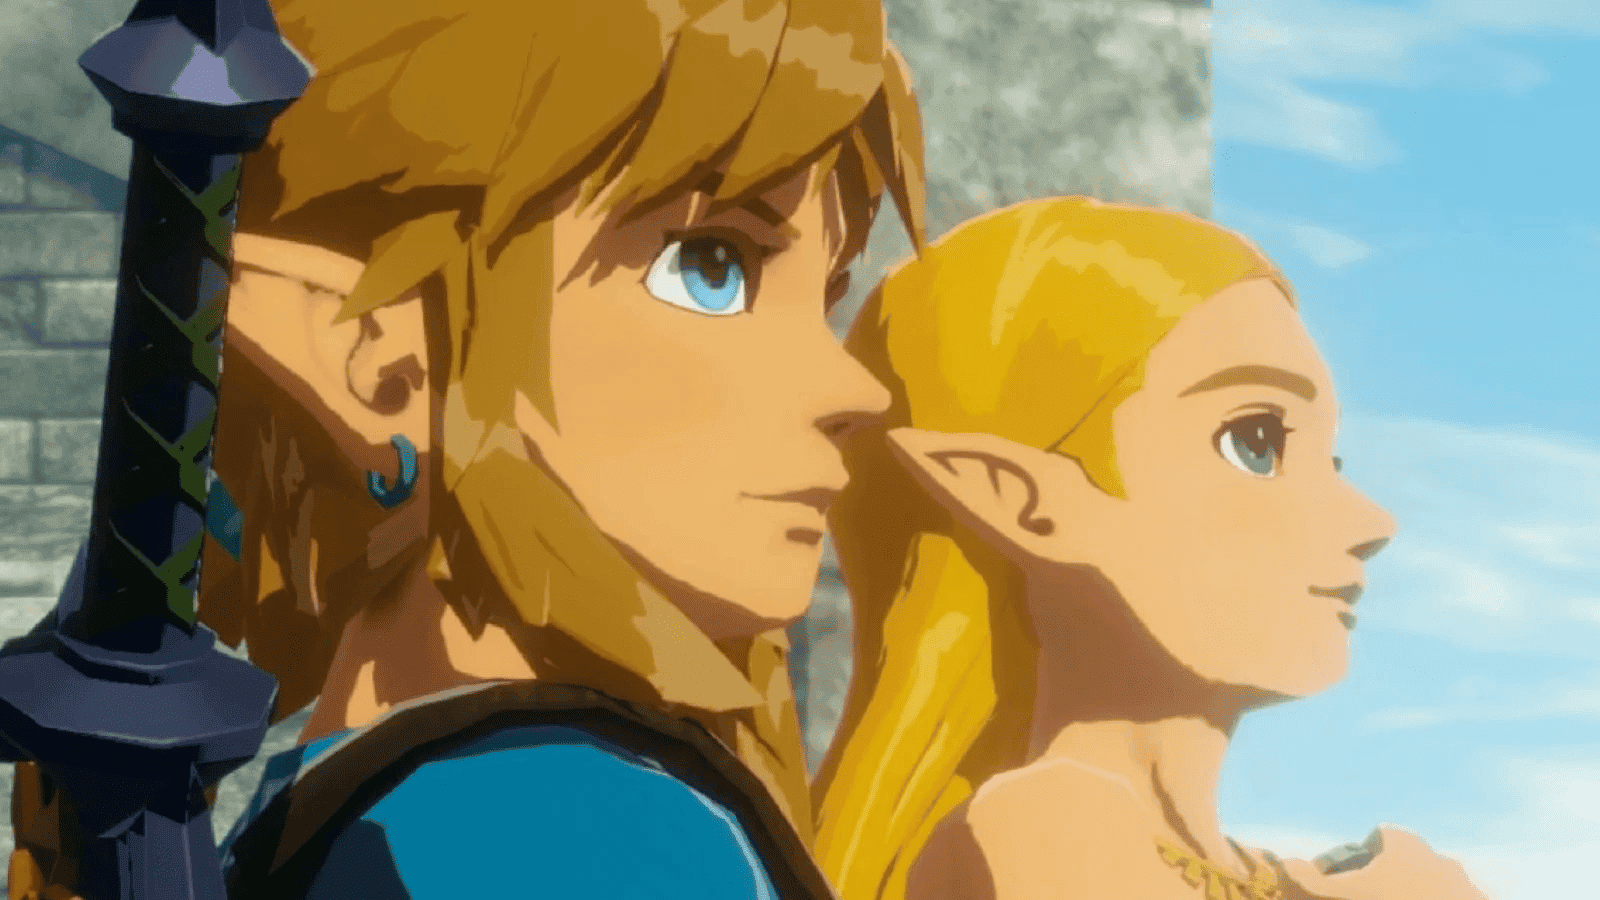 [Curiosidades] The Legend of Zelda fue el primer videojuego de consola en permitir guardado